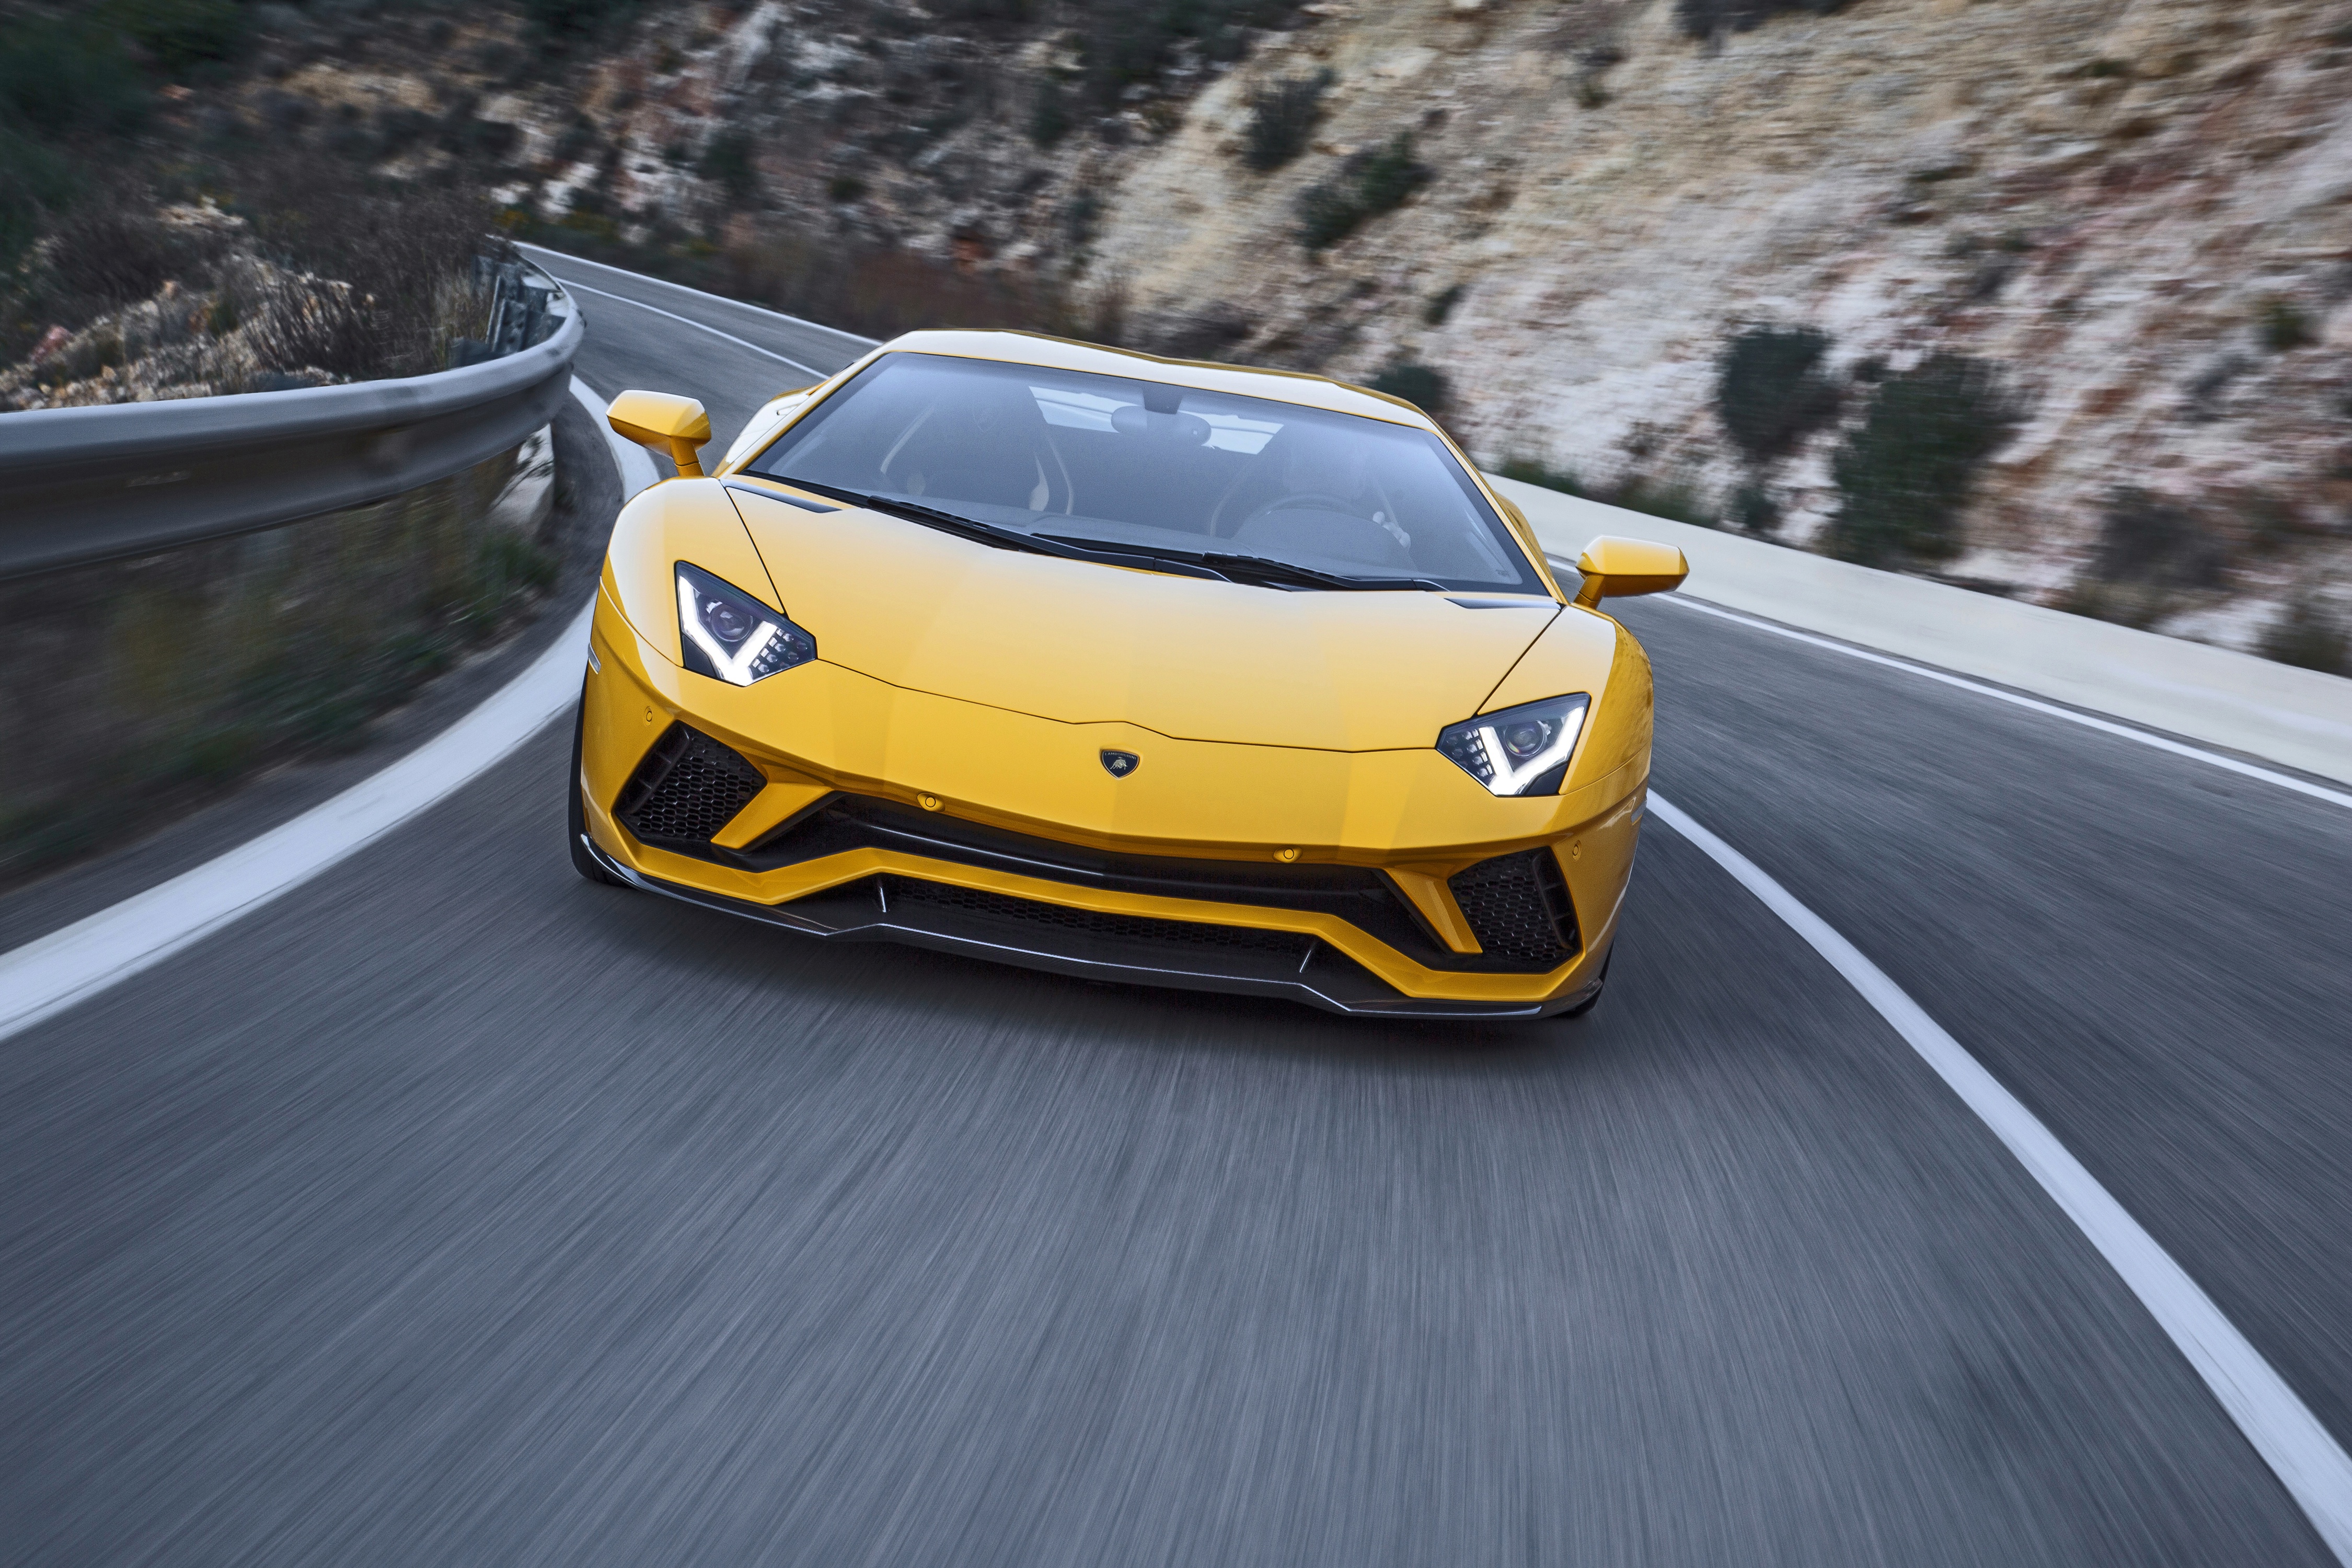 Download mobile wallpaper Lamborghini, Car, Supercar, Lamborghini Aventador, Vehicles, Yellow Car, Lamborghini Aventador S for free.